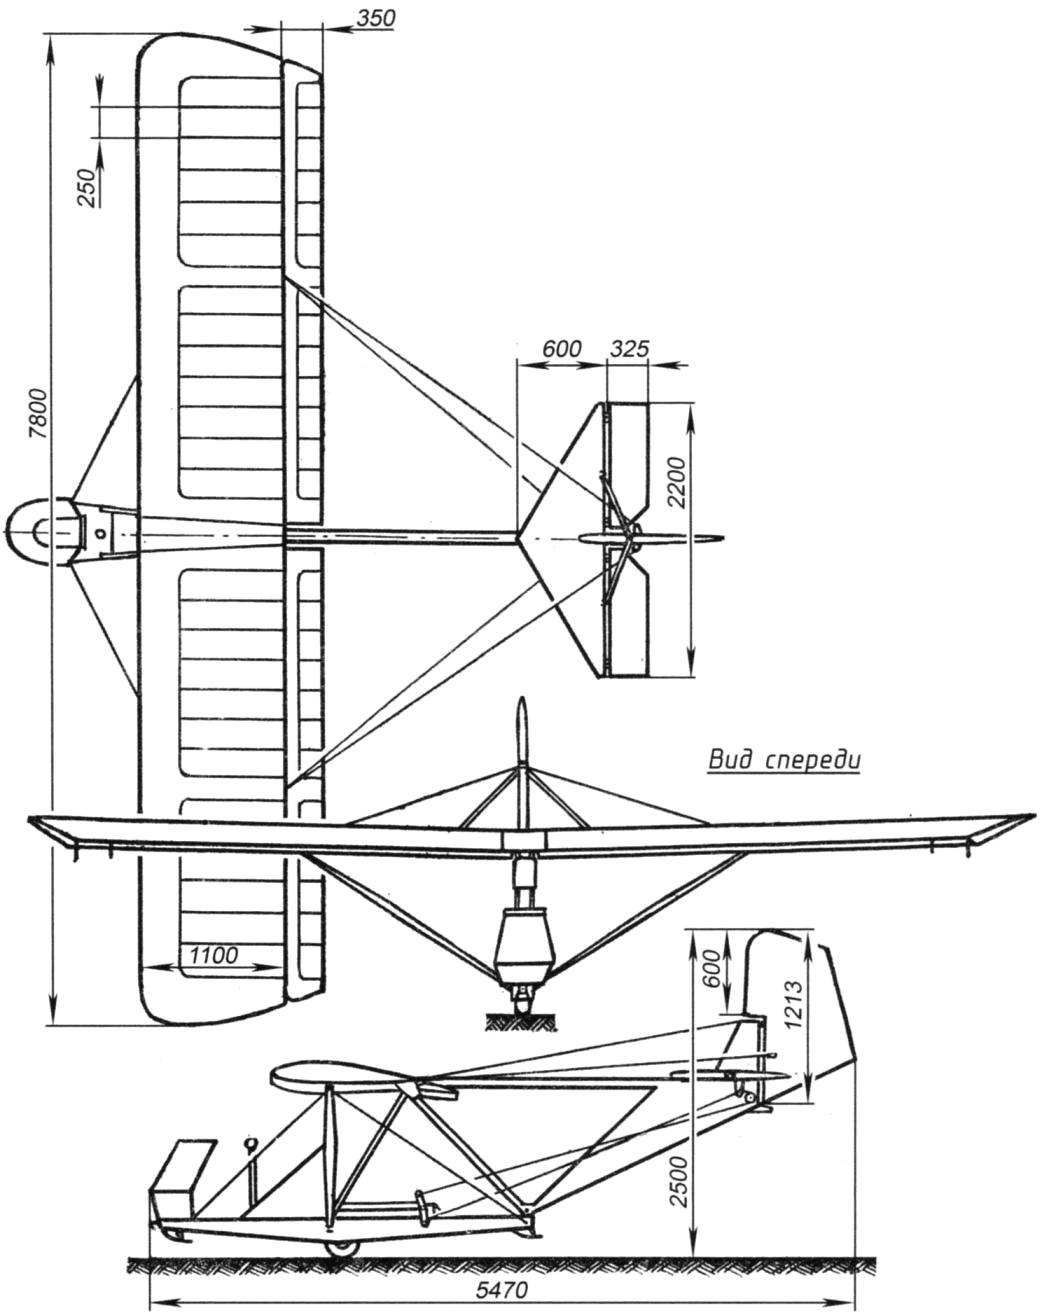 Геометрическая схема планёра БРО-11М конструкции Б.И. Ошкиниса